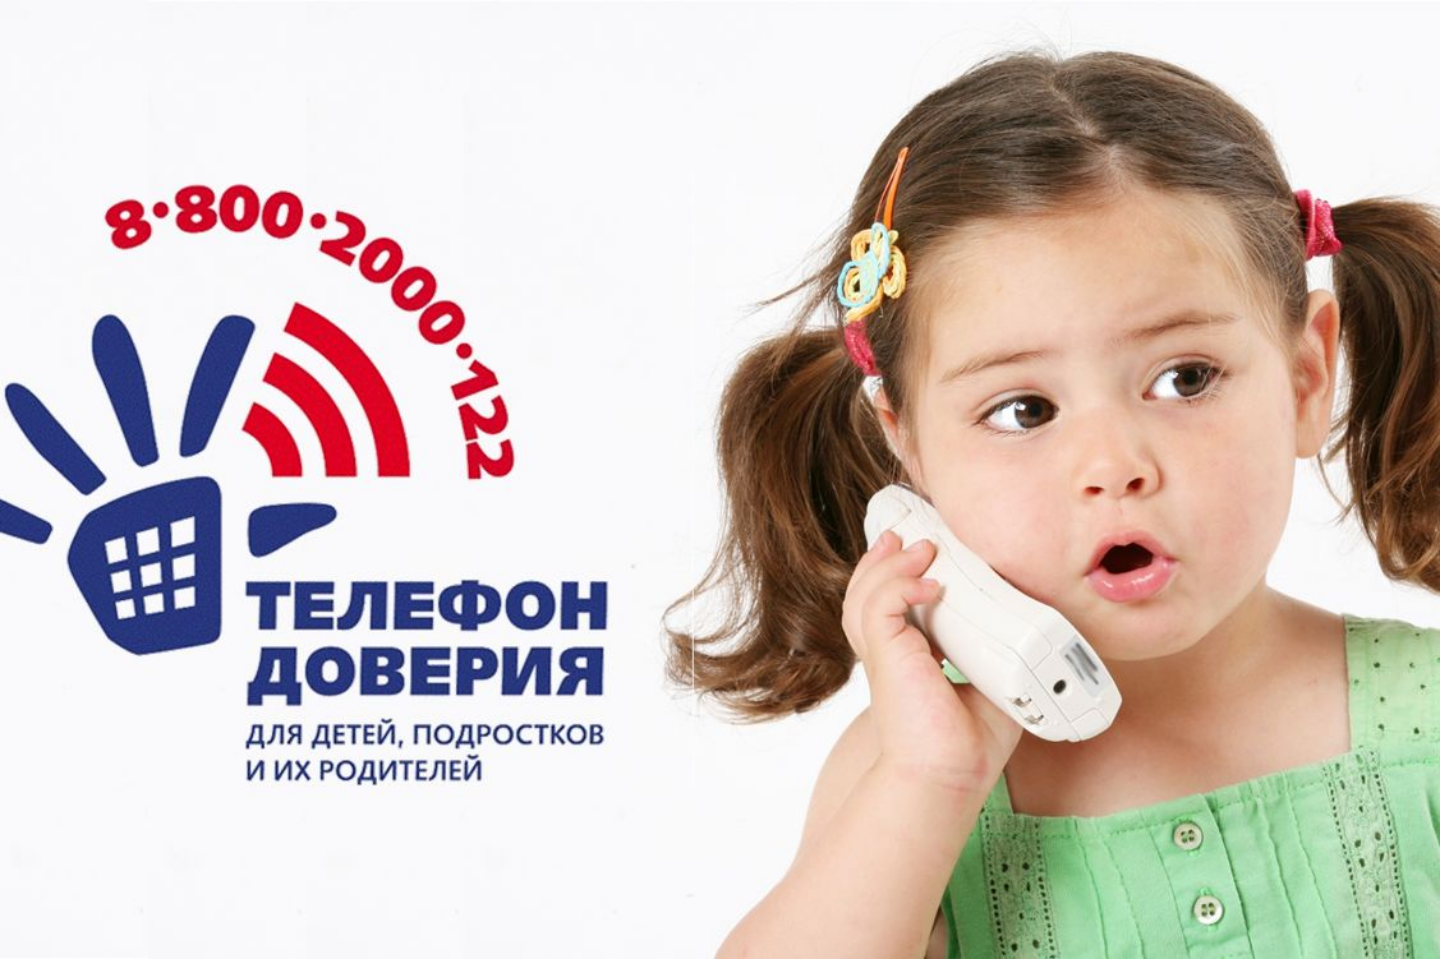 До 15 апреля продлен срок предоставления работ на областной конкурс «Пять советов, как позвонить на детский телефон доверия»